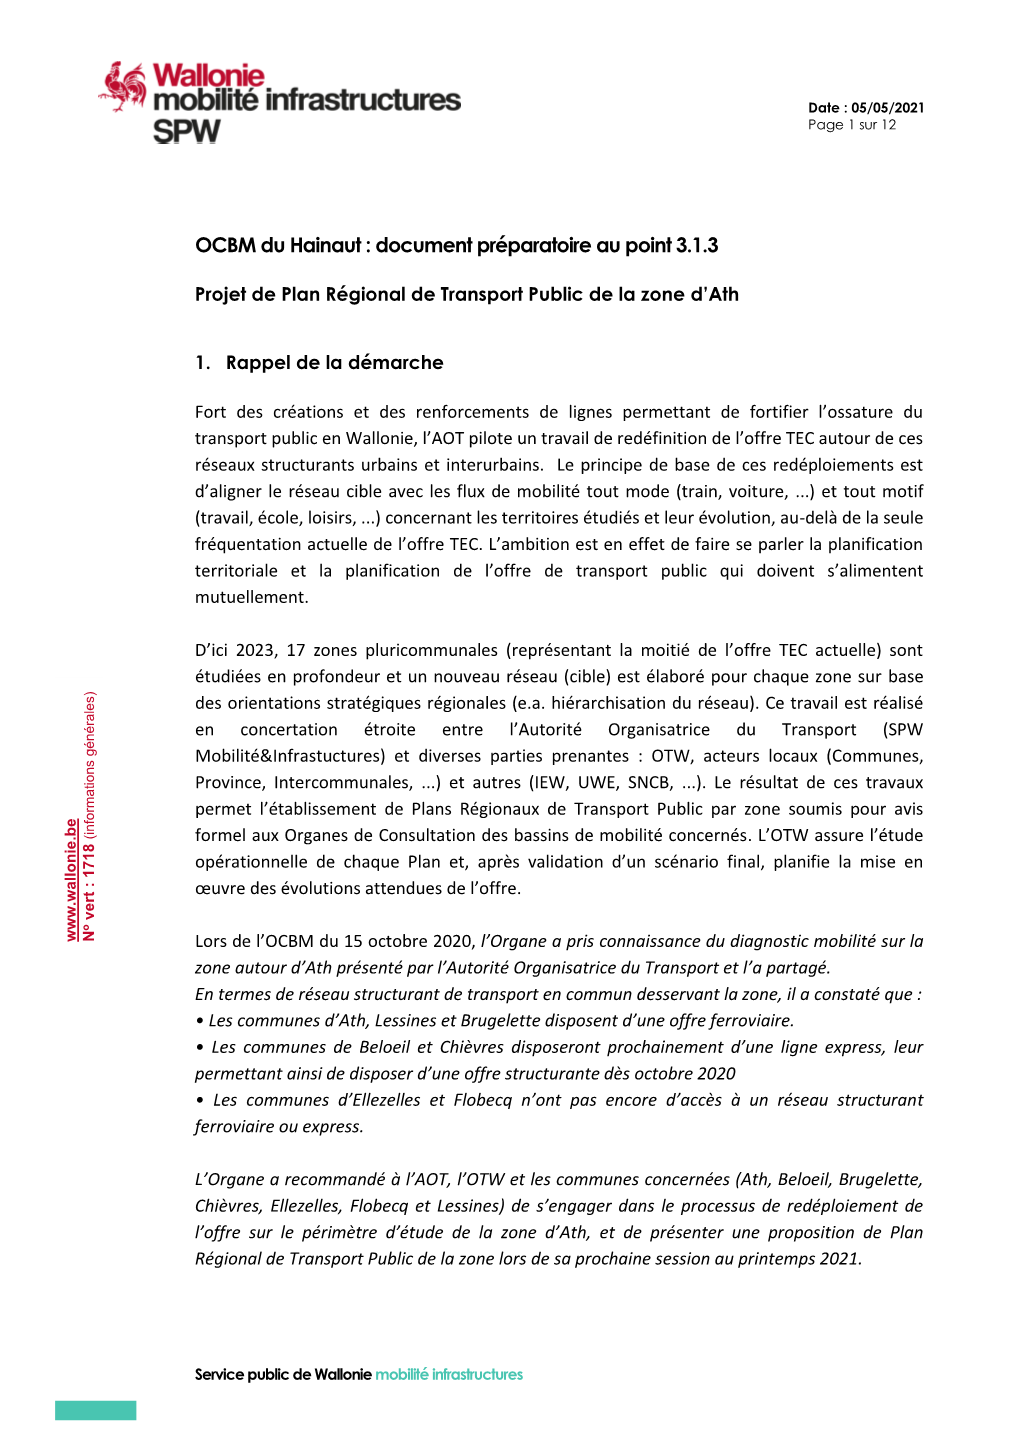 OCBM Du Hainaut : Document Préparatoire Au Point 3.1.3